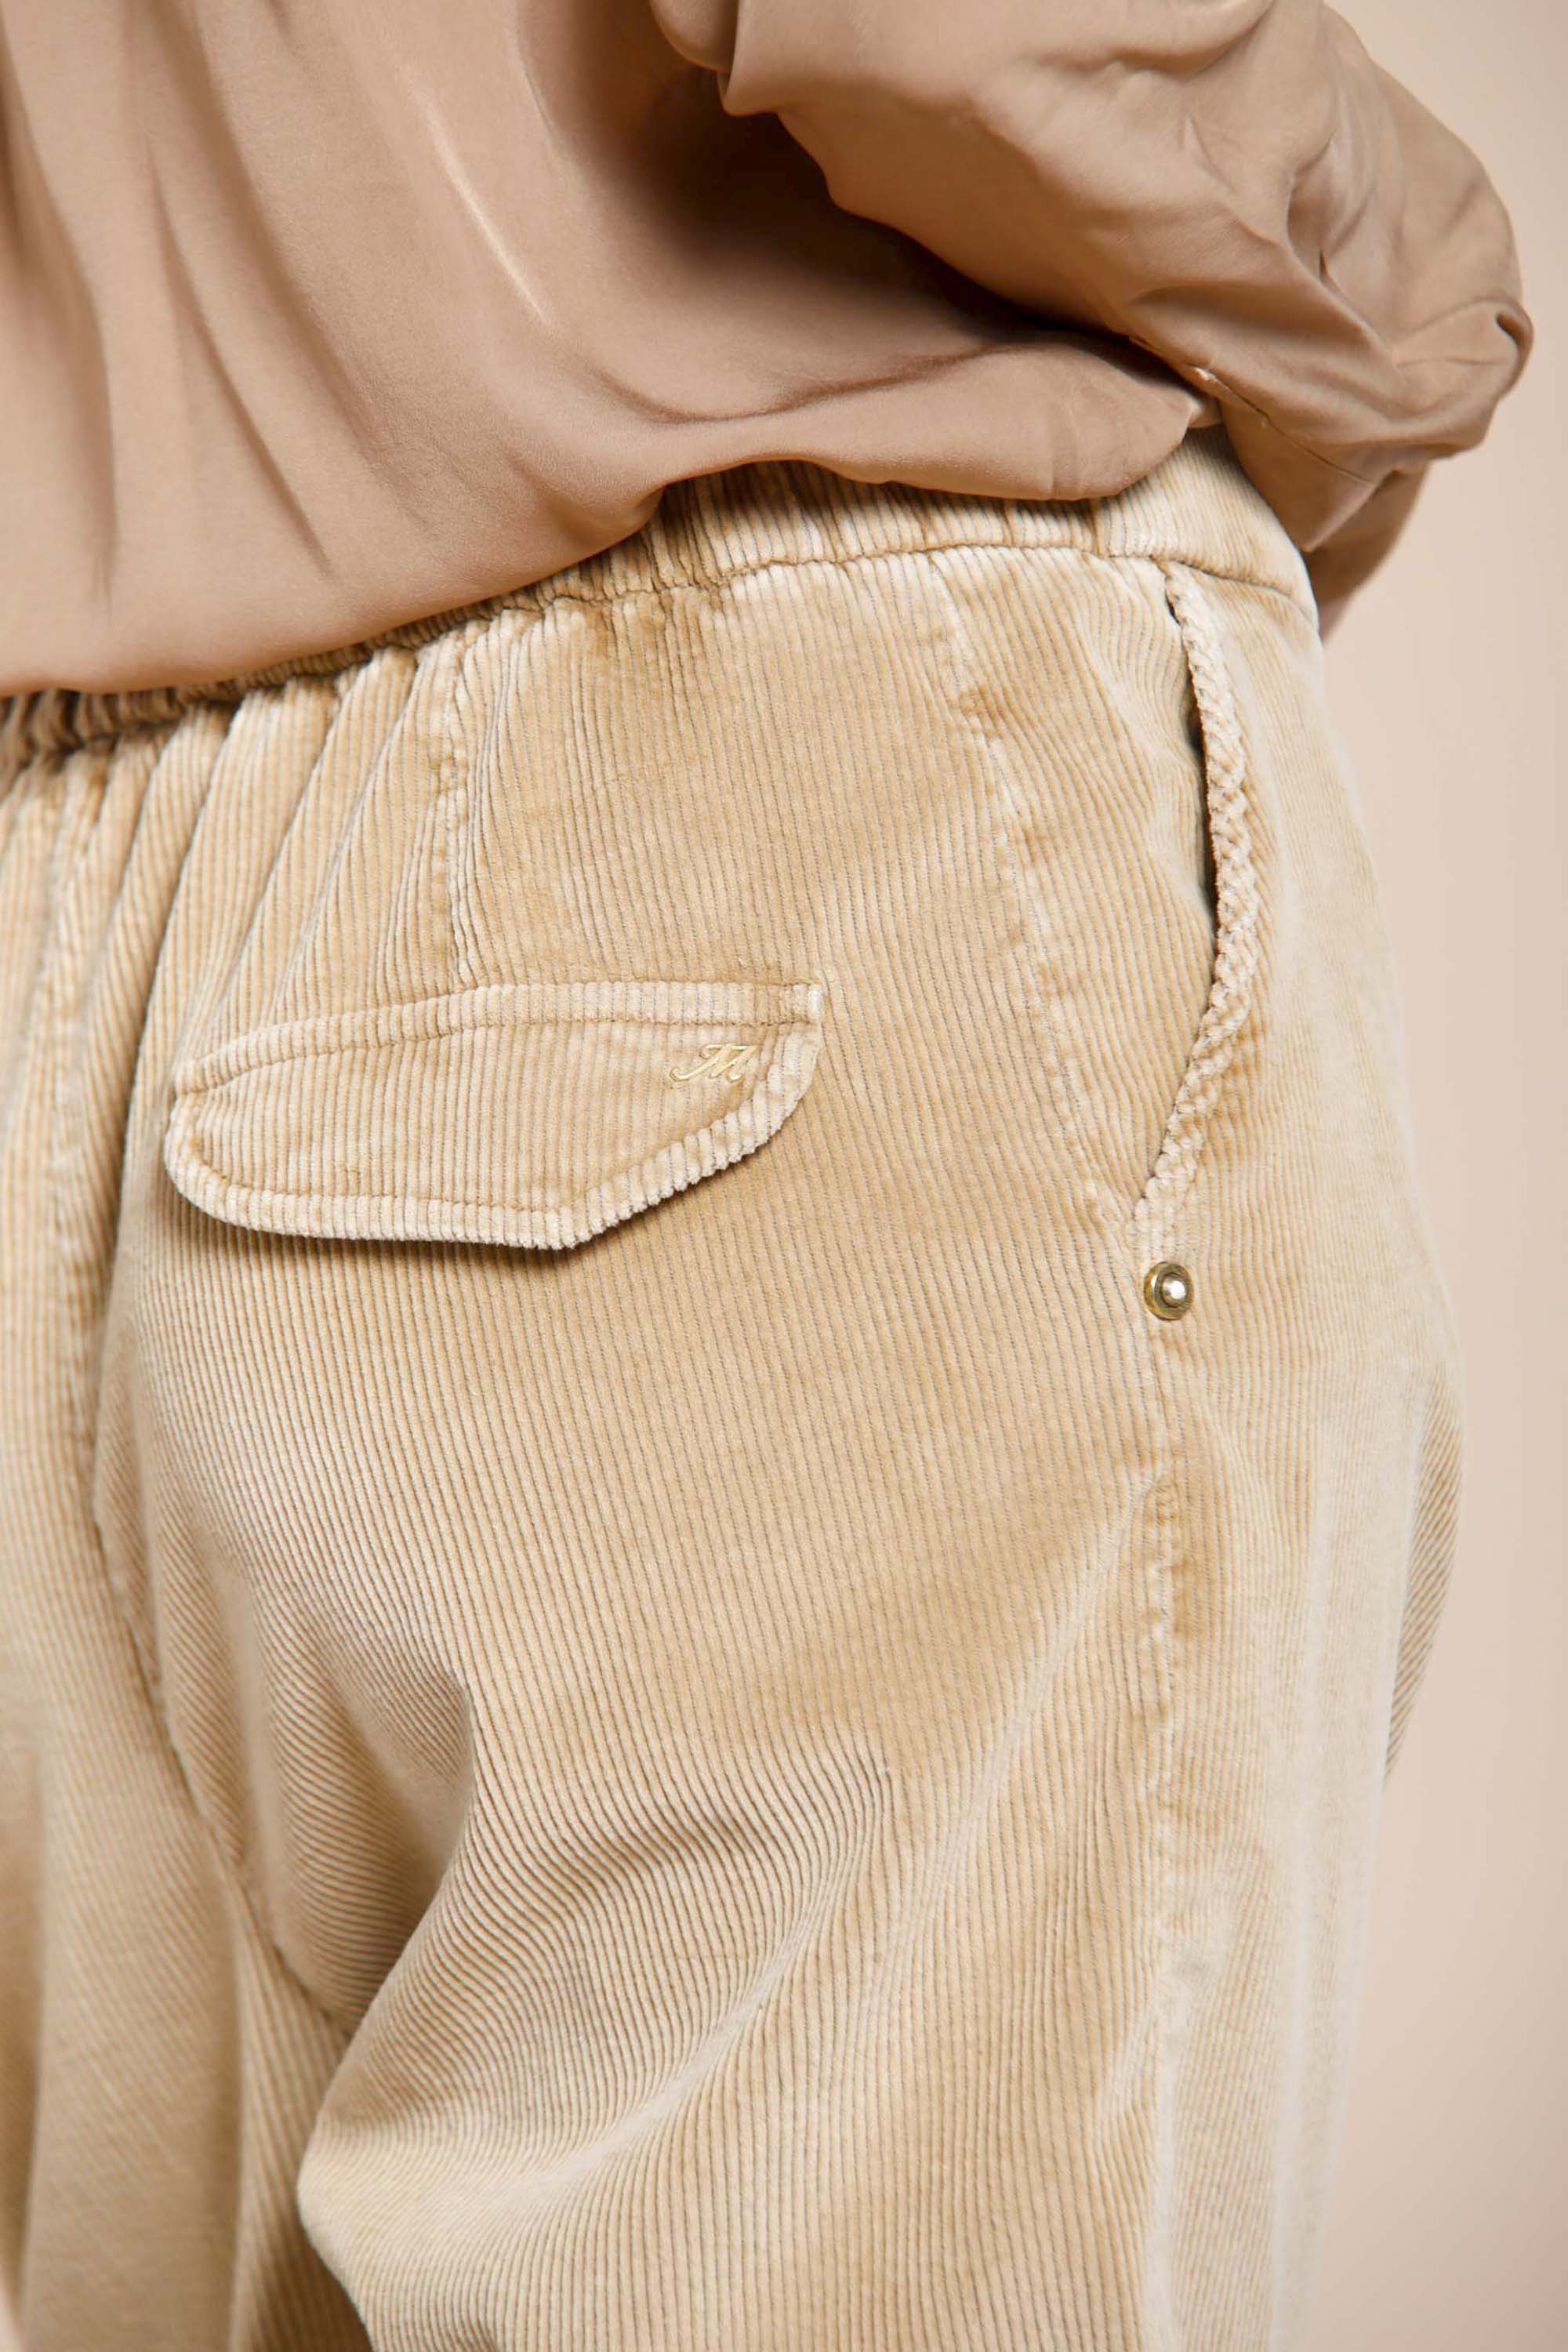 Image 4 du pantalon chino femme en velours côtelé noisette modèle Malibu Jogger City de Mason's